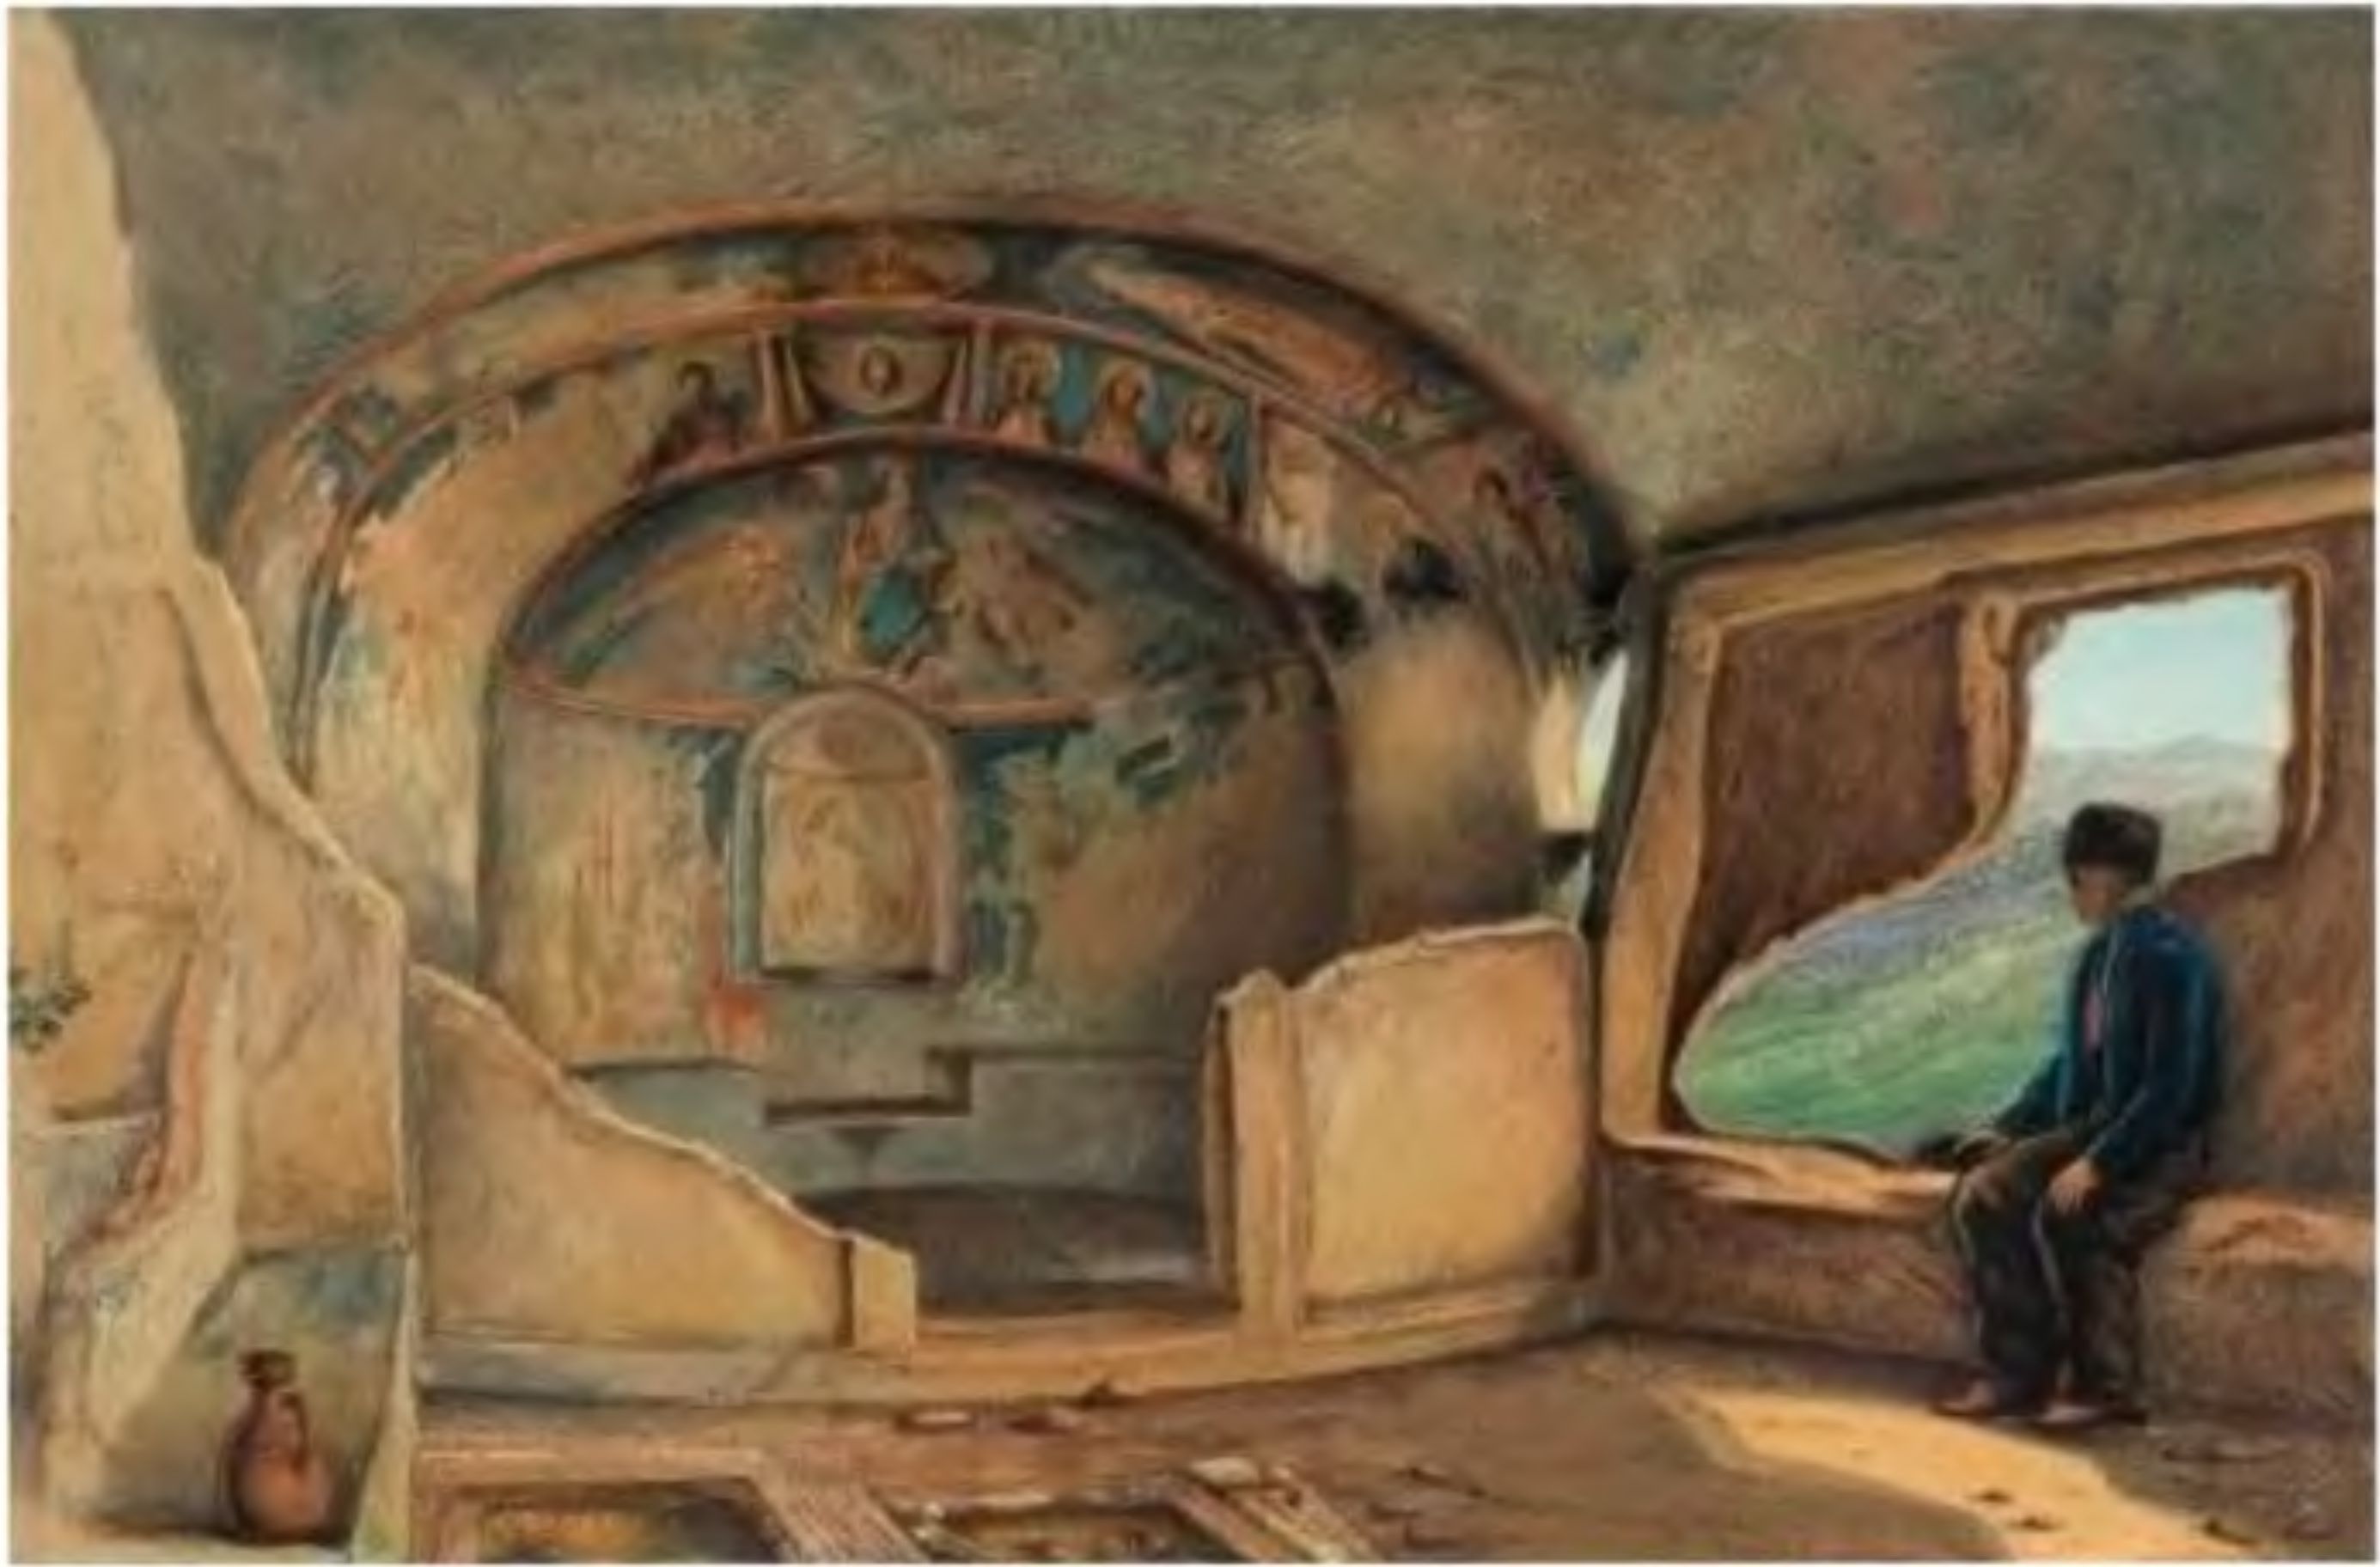 Южный монастырь. Вид на апсиду пещерной церкви. Из альбома М. Вебеля